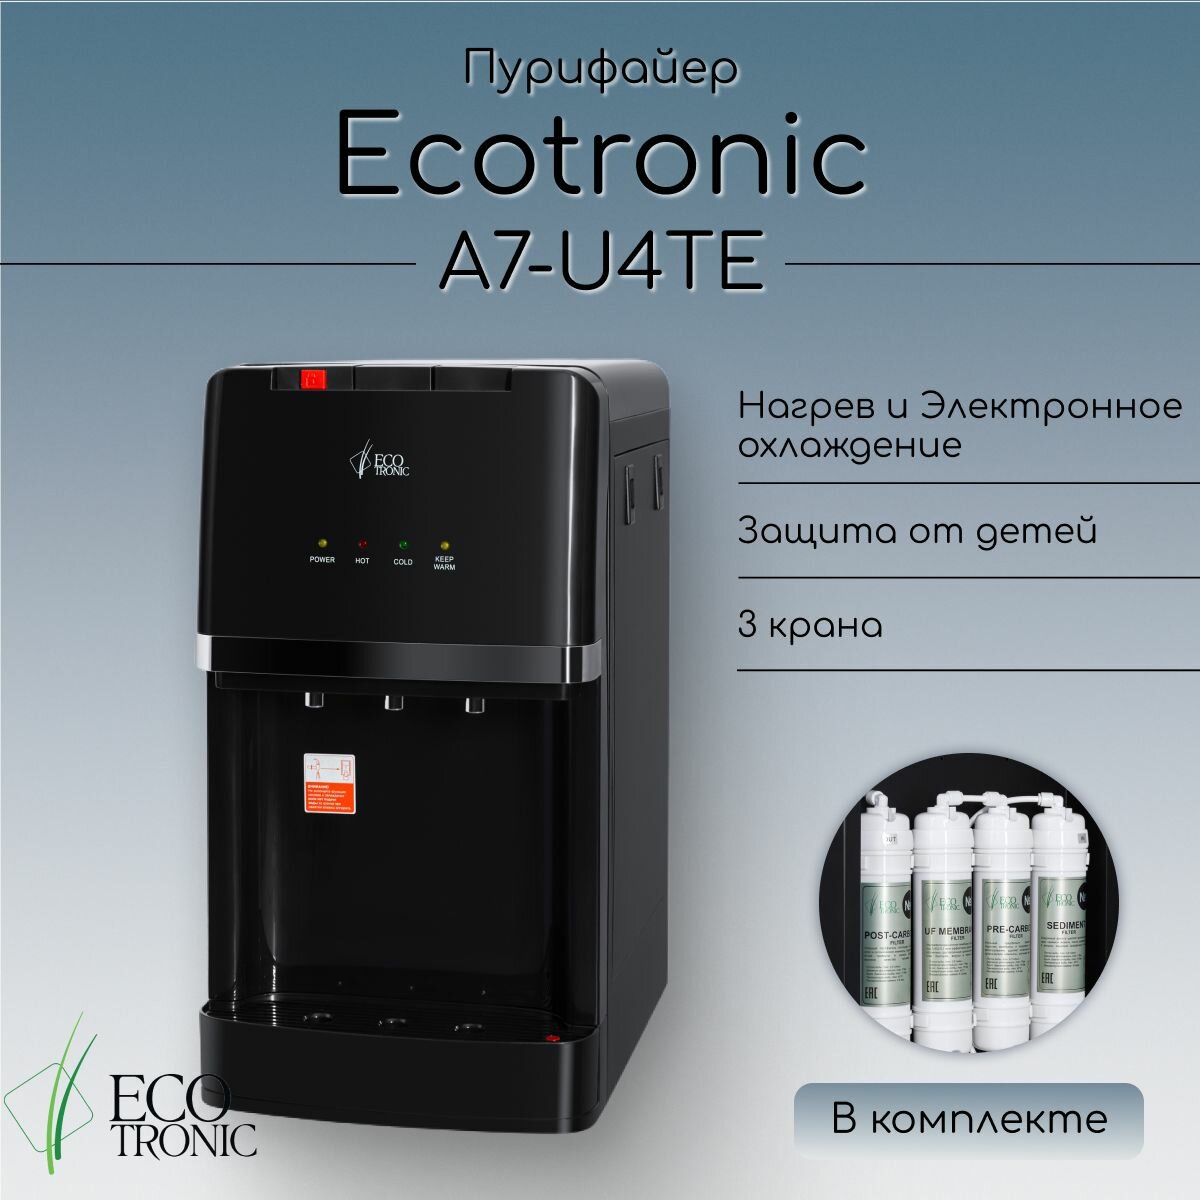 Пурифайер Ecotronic A7-U4TE black